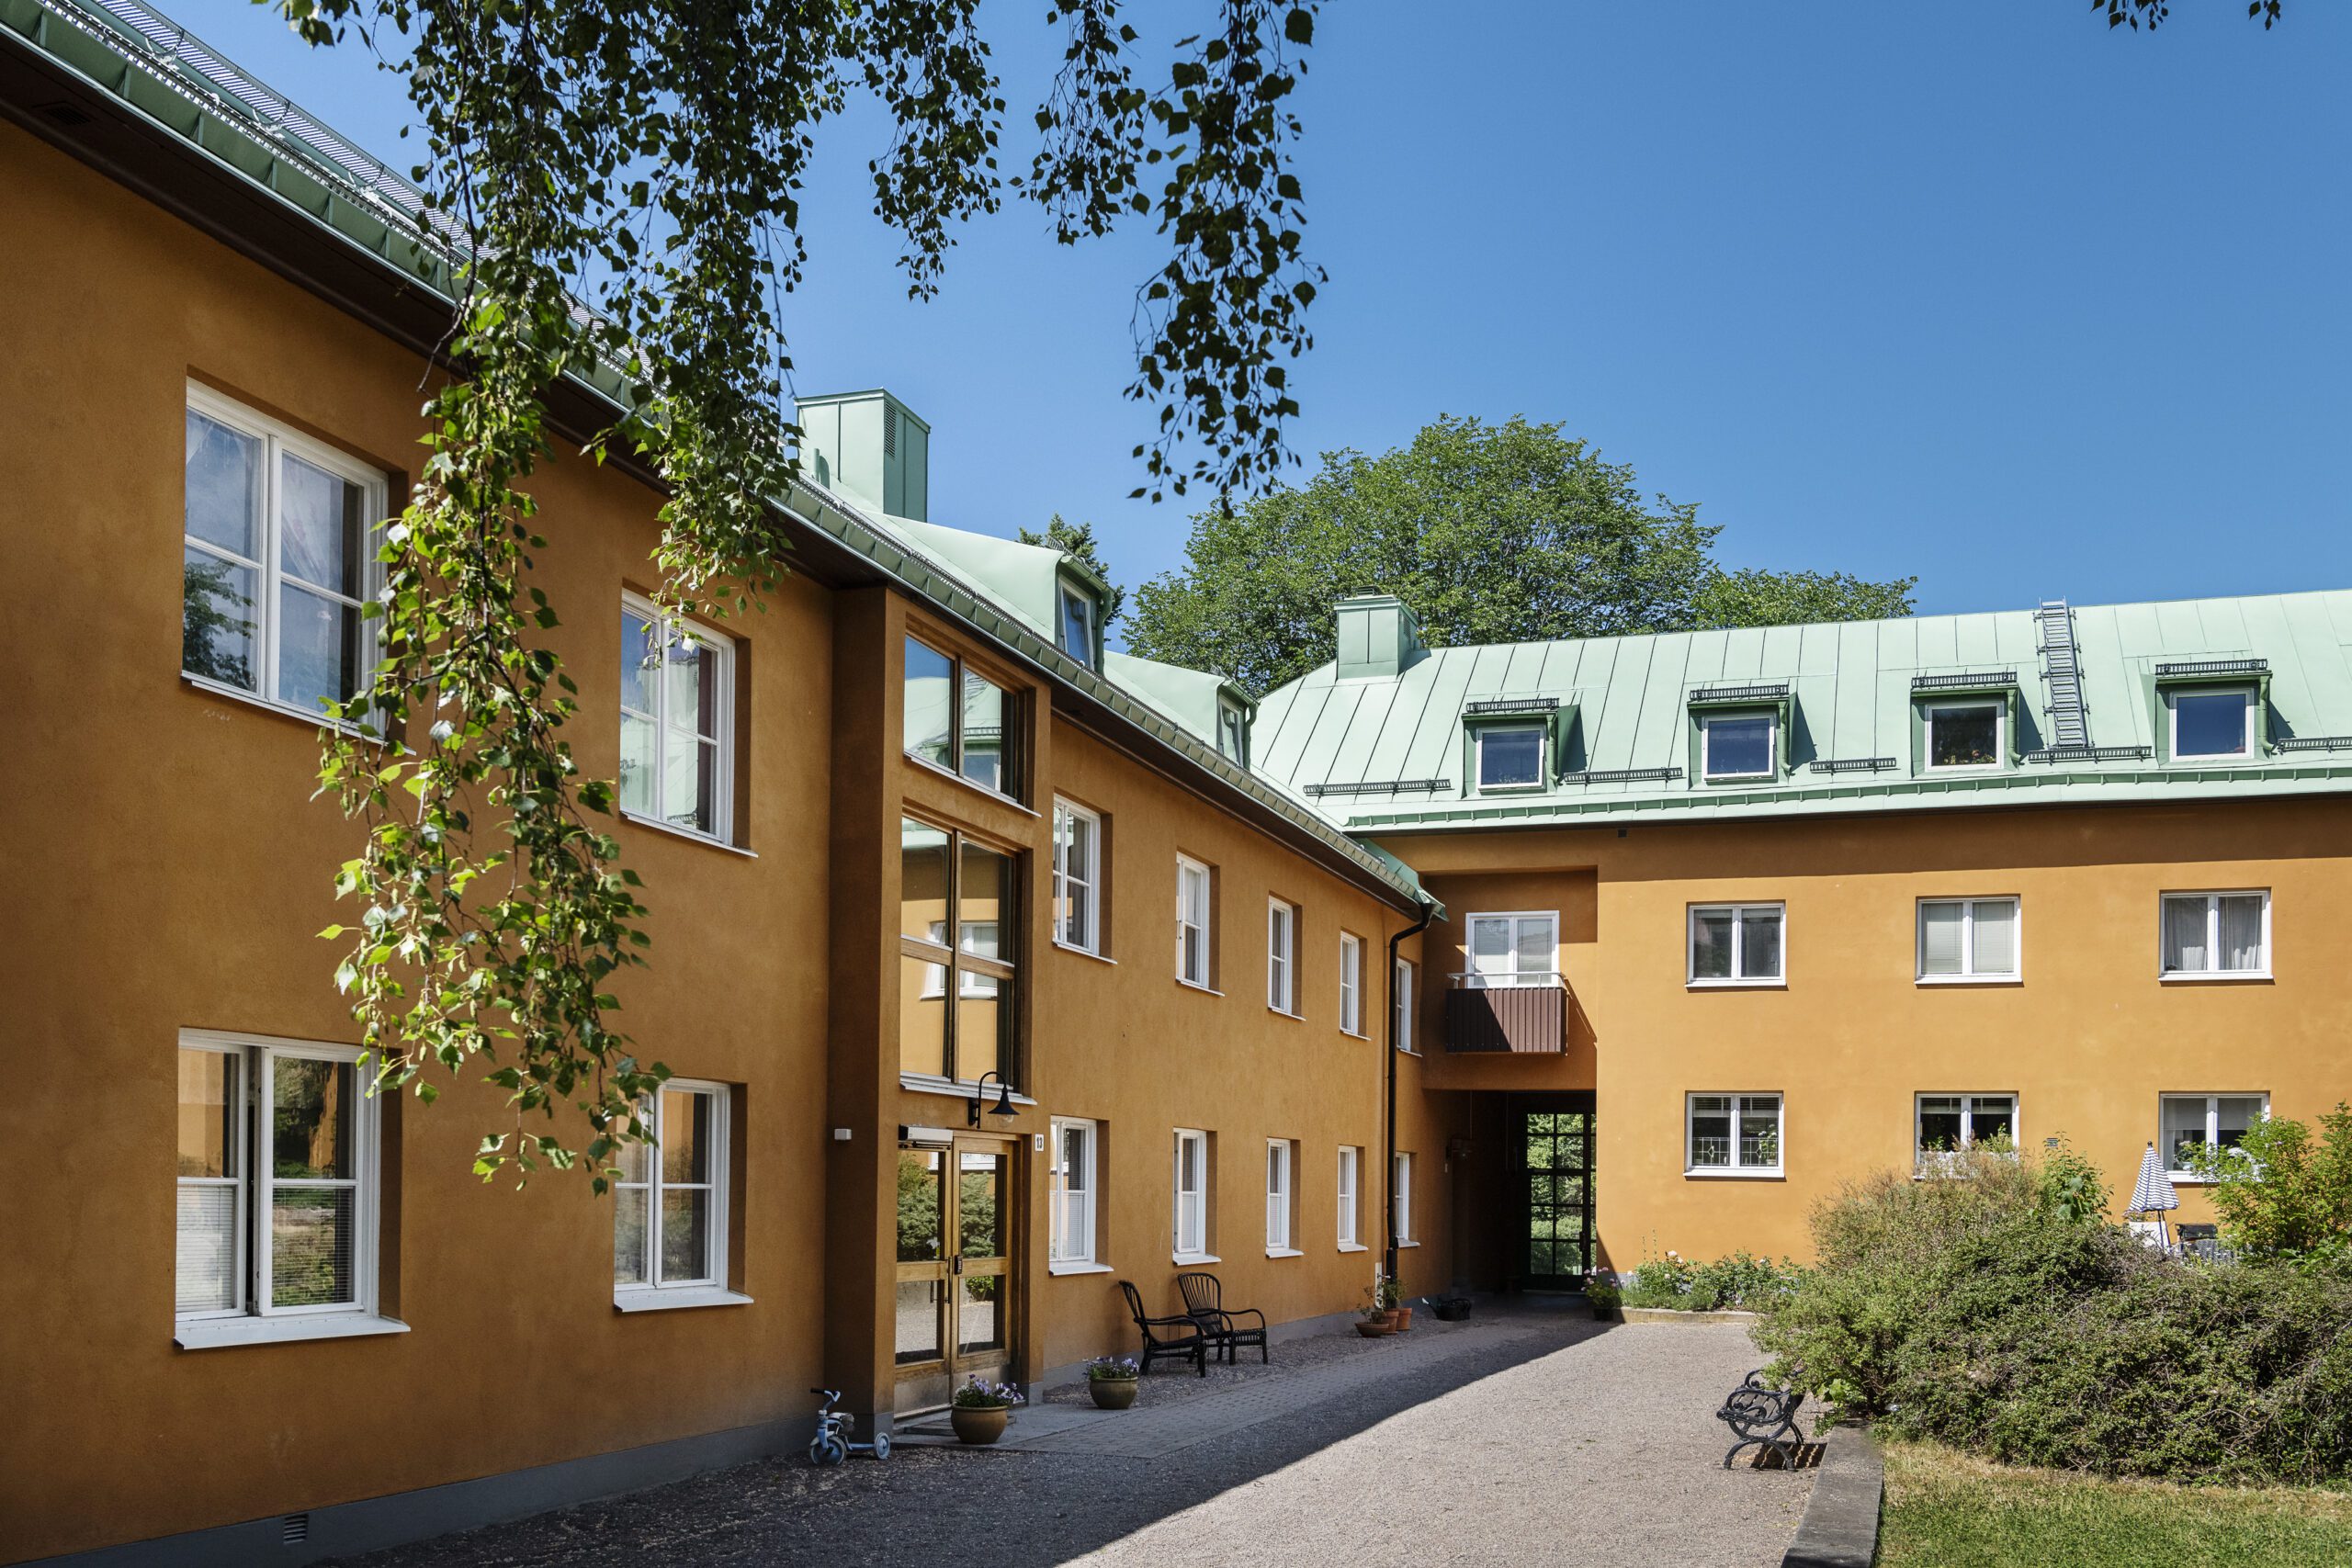 För fastighet på Borgargatan 4 på Södermalm finns en digital underhållsplan i Planima